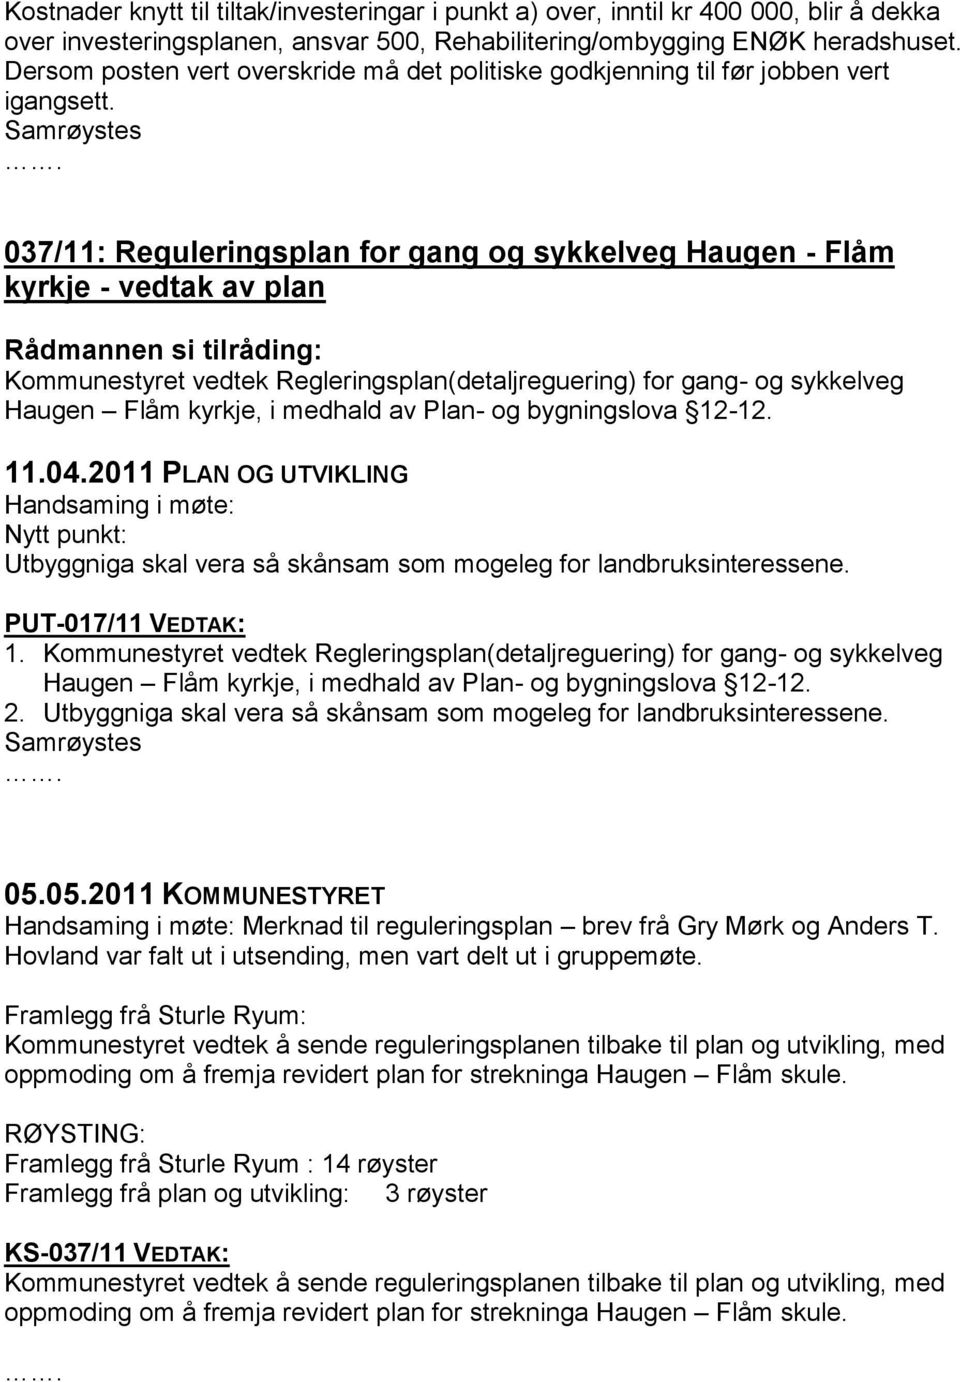 037/11: Reguleringsplan for gang og sykkelveg Haugen - Flåm kyrkje - vedtak av plan Kommunestyret vedtek Regleringsplan(detaljreguering) for gang- og sykkelveg Haugen Flåm kyrkje, i medhald av Plan-